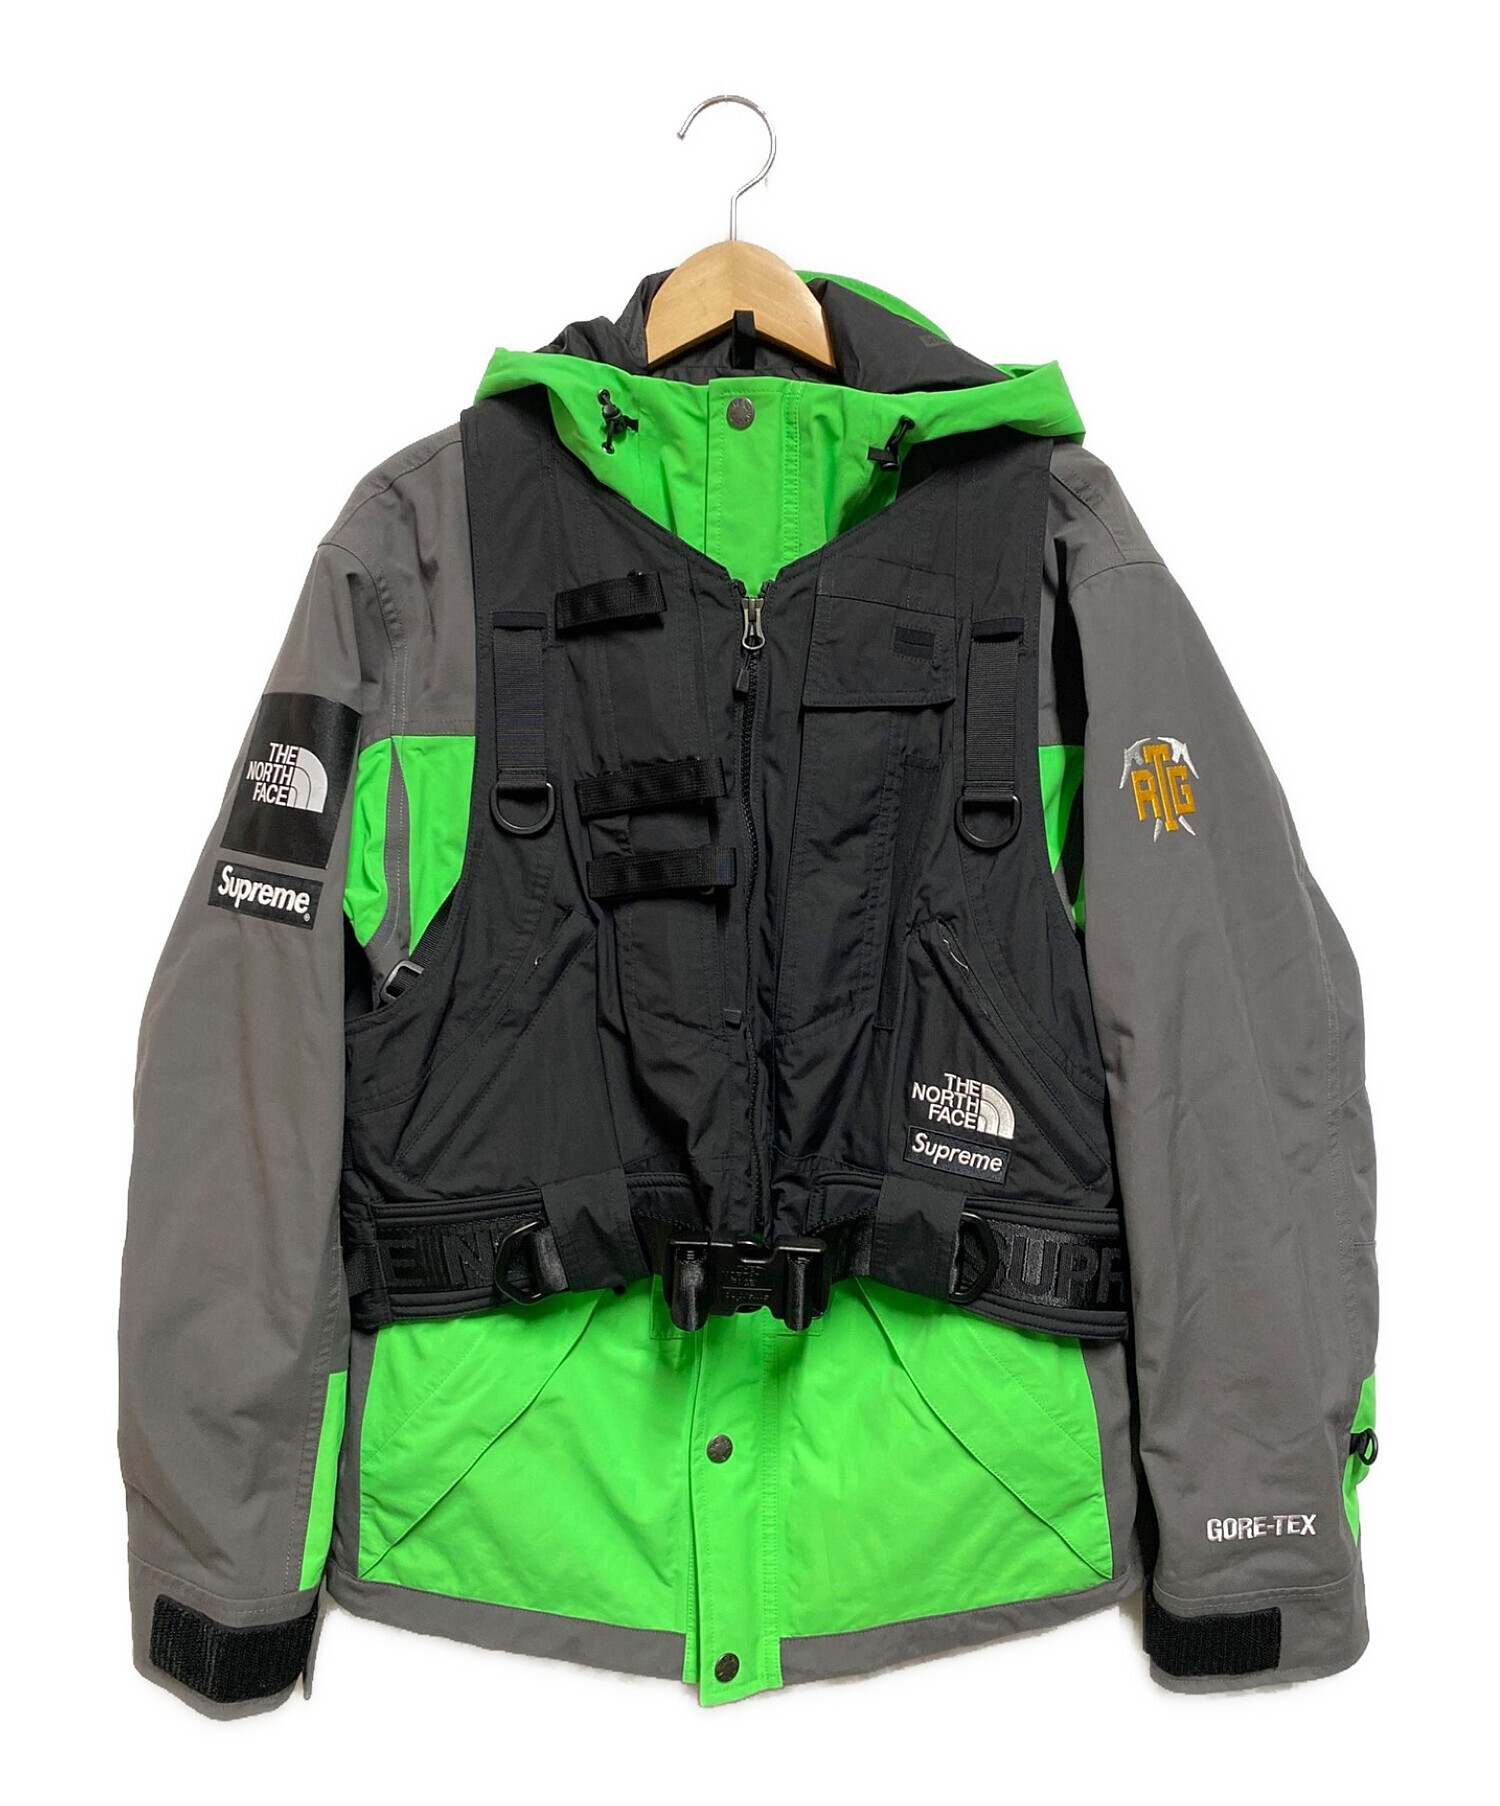 THE NORTH FACE (ザ ノース フェイス) SUPREME (シュプリーム) RTG Jacket Vest ブラック サイズ:S